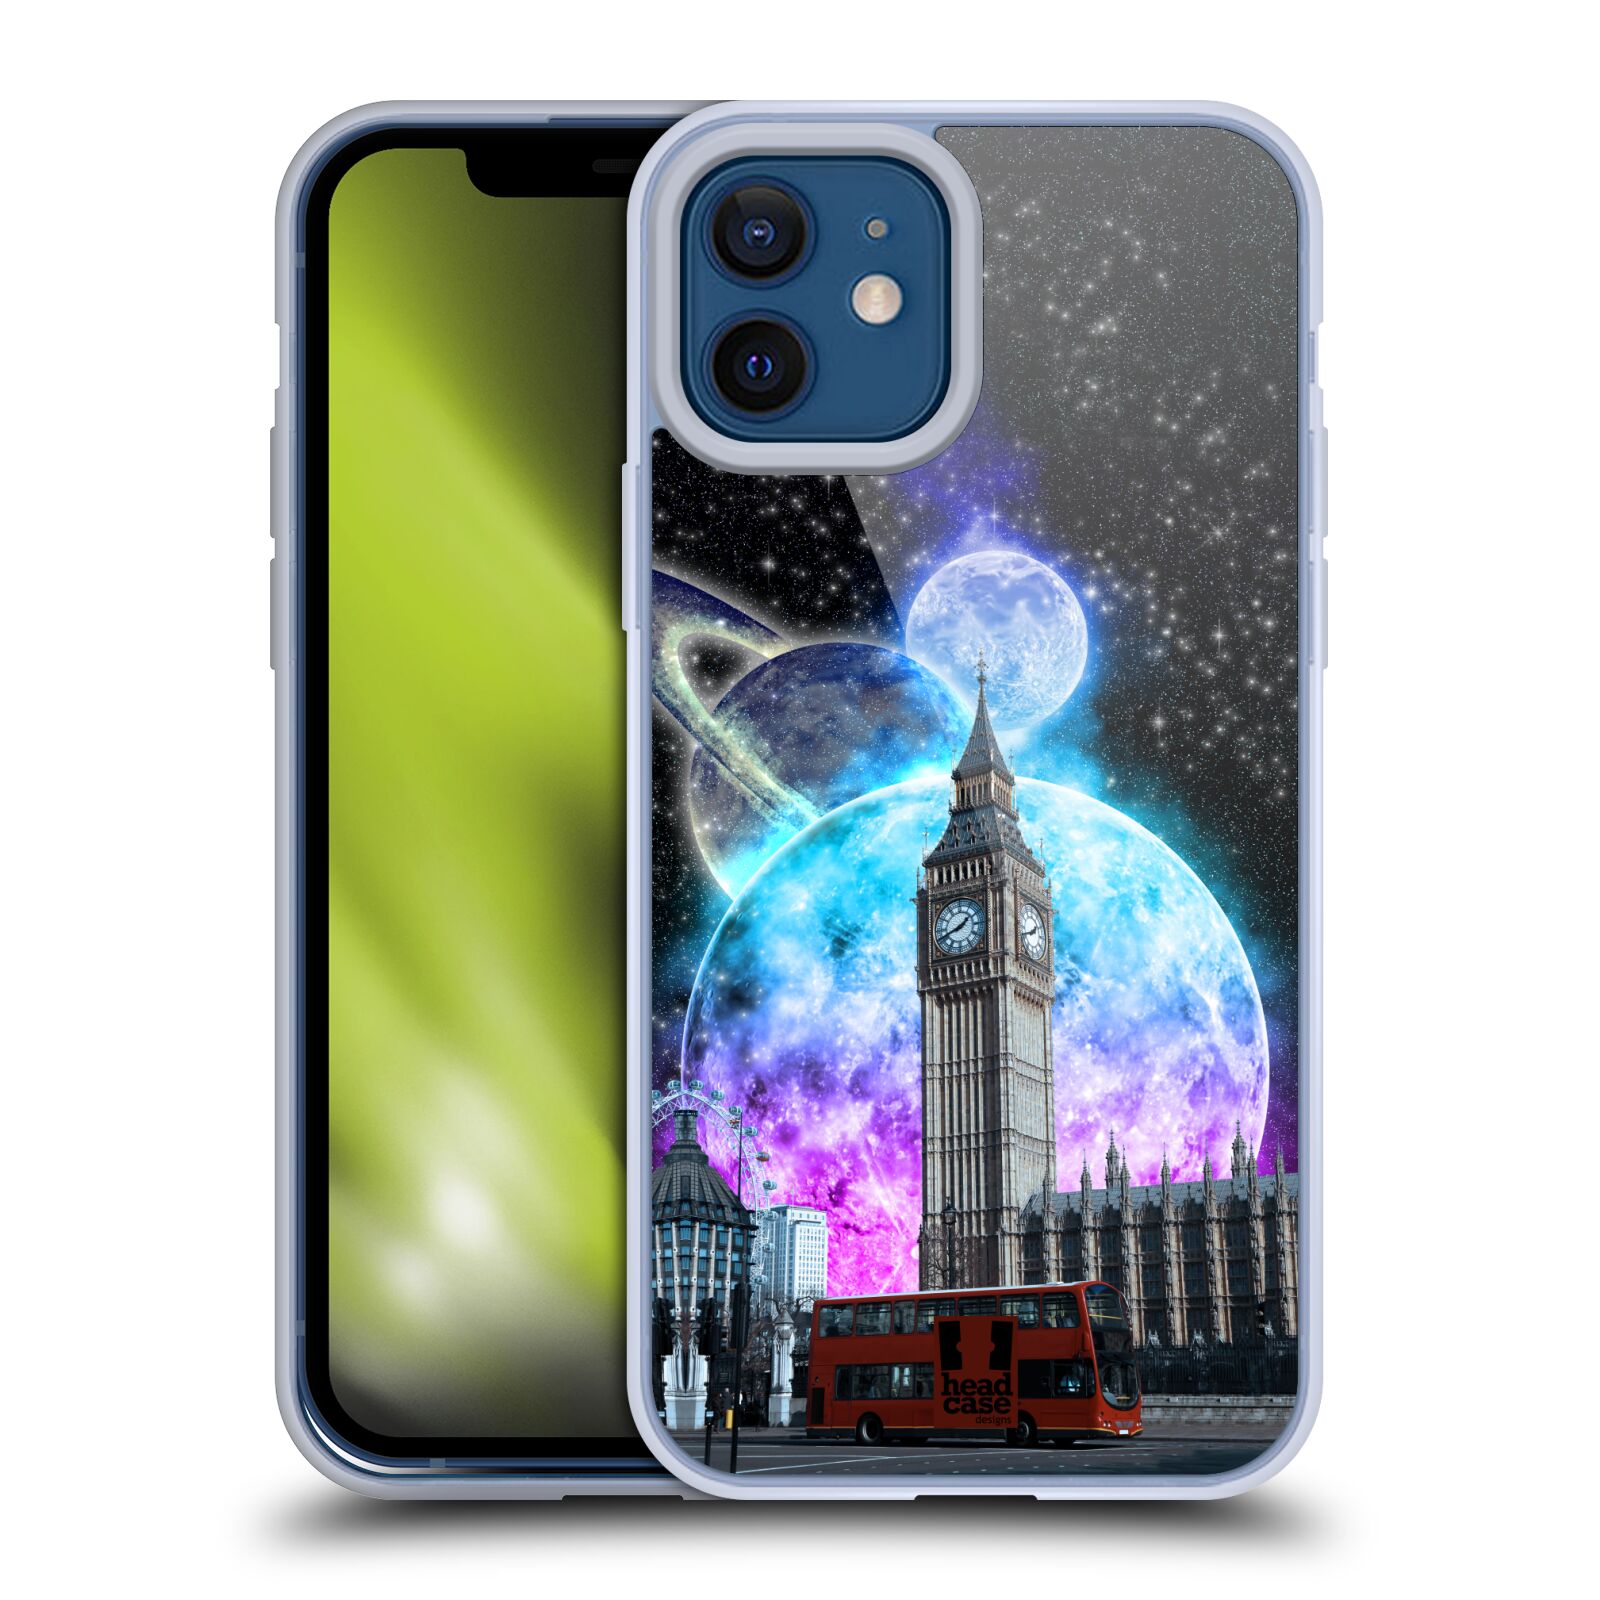 Silikonové pouzdro na mobil Apple iPhone 12 / 12 Pro - Head Case - Měsíční Londýn (Silikonový kryt, obal, pouzdro na mobilní telefon Apple iPhone 12 / Apple iPhone 12 Pro (6,1") s motivem Měsíční Londýn)